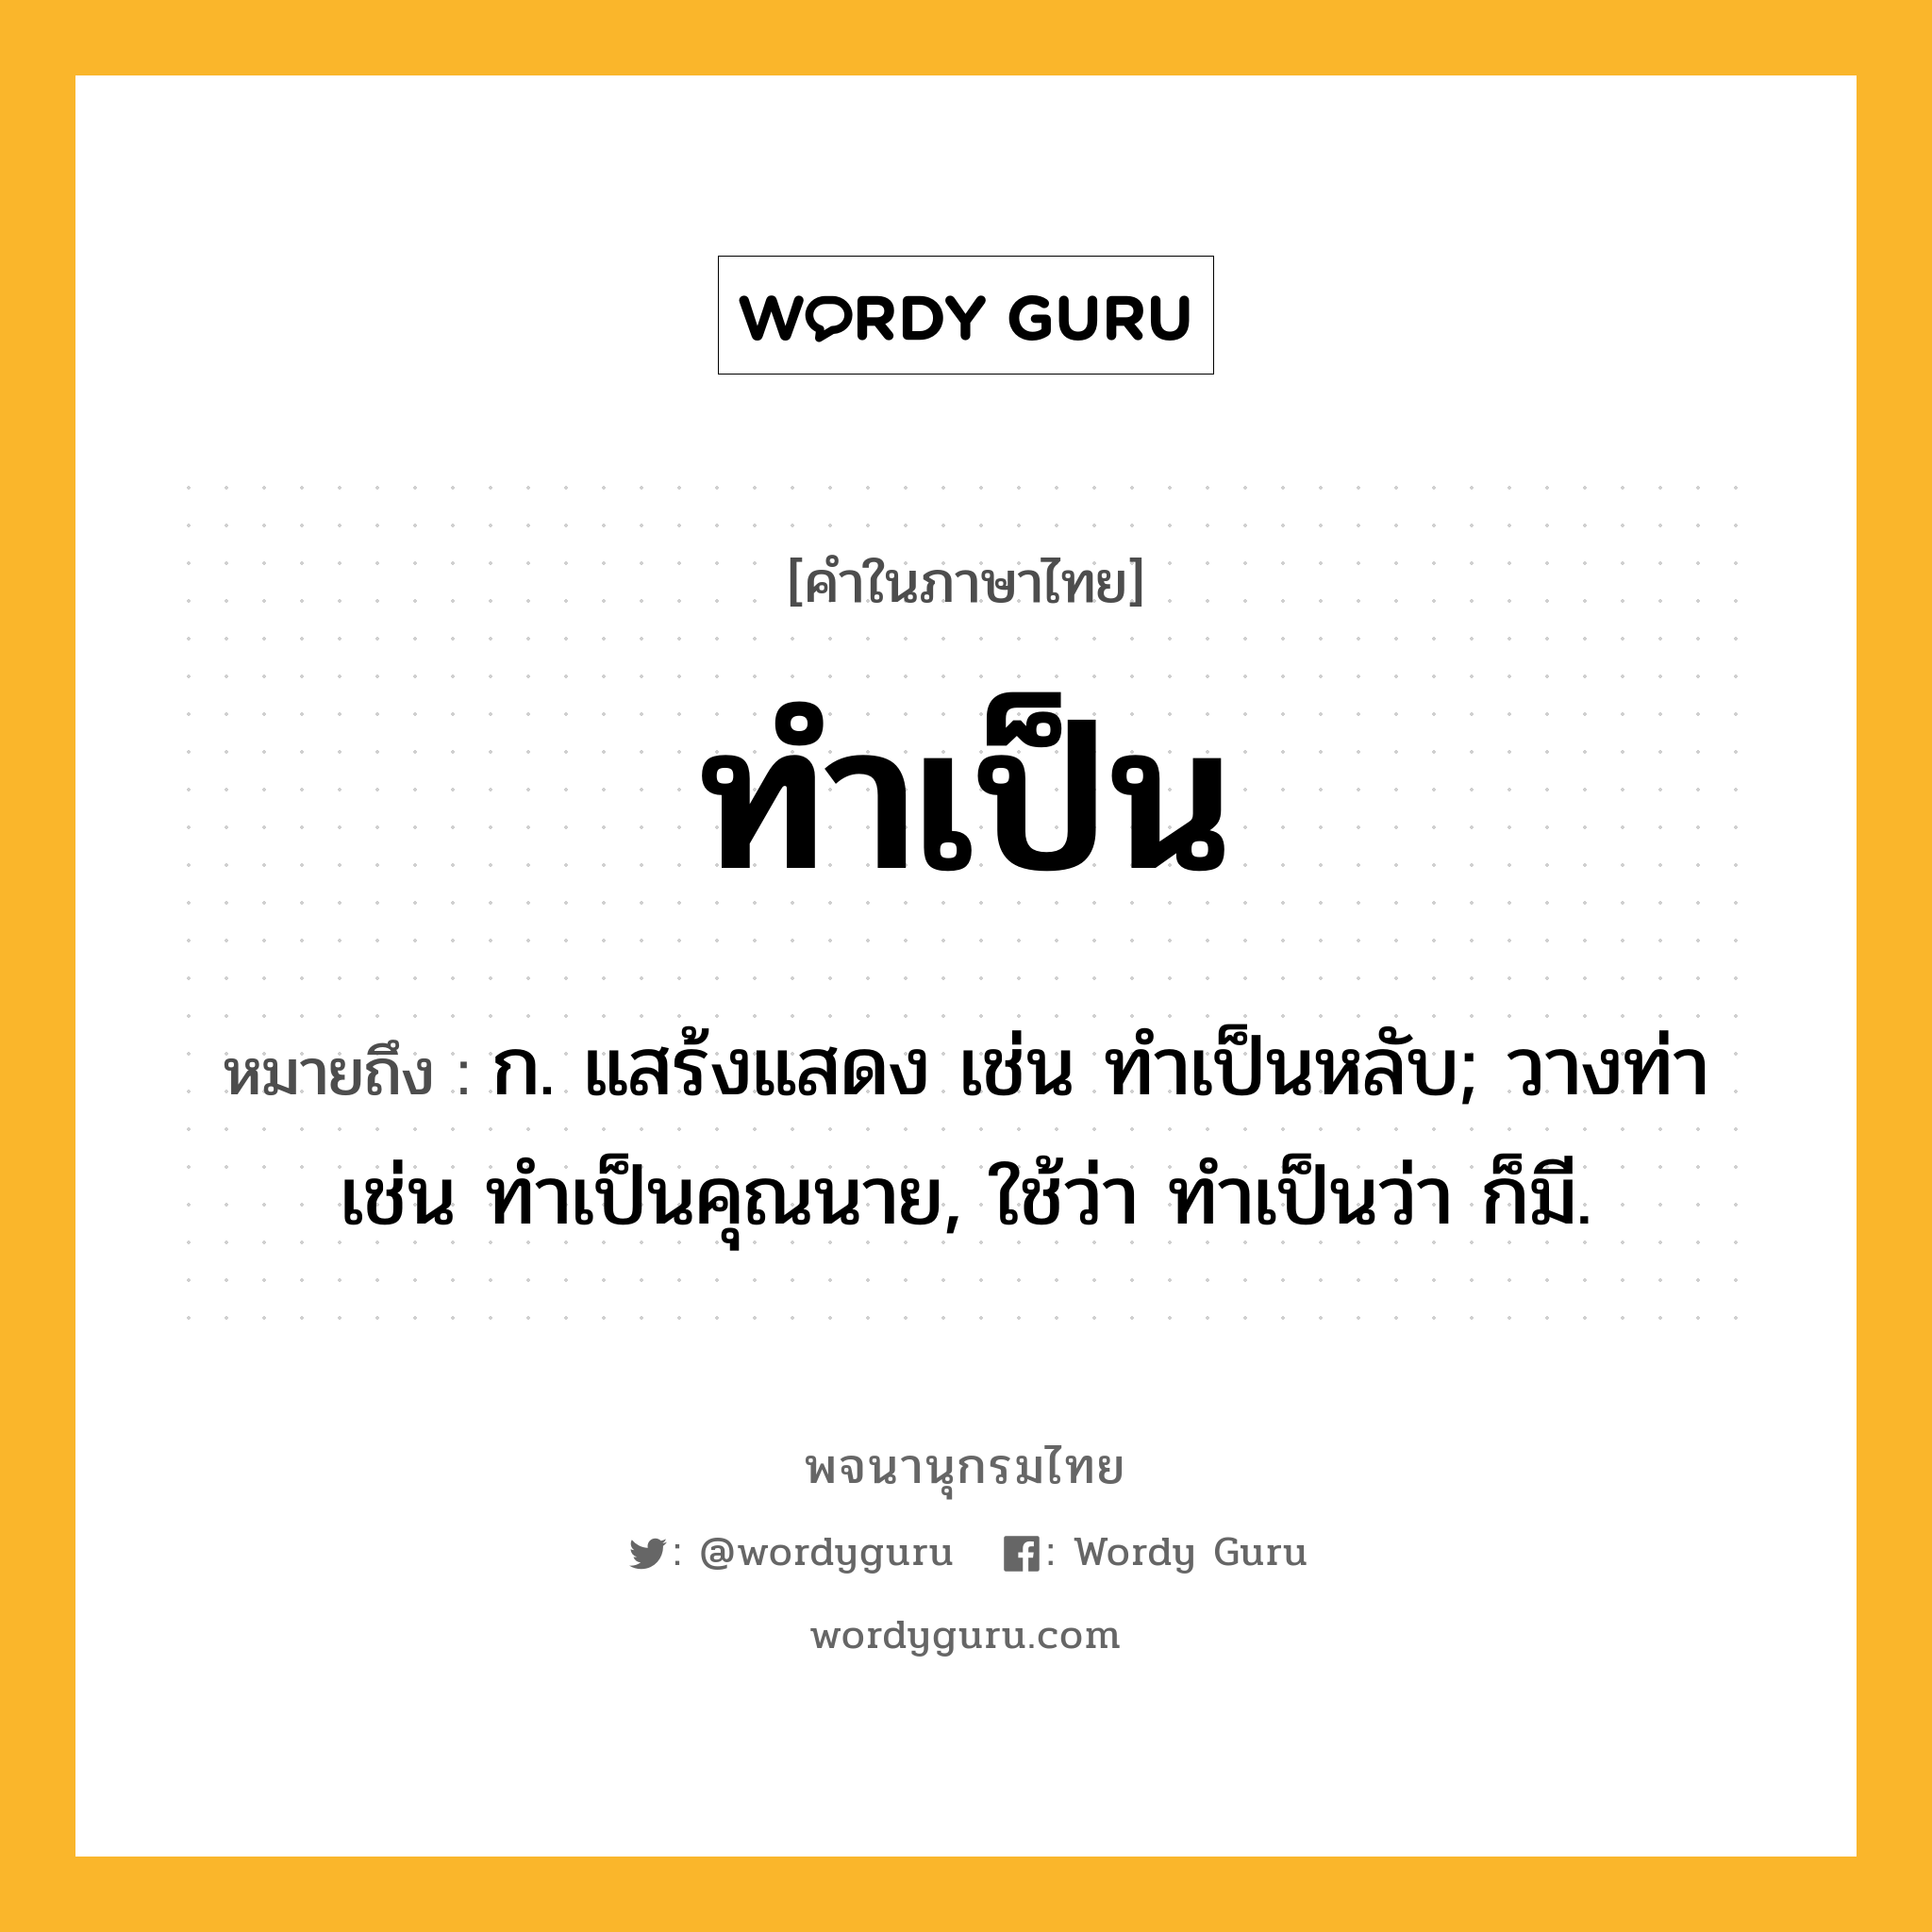 ทำเป็น ความหมาย หมายถึงอะไร?, คำในภาษาไทย ทำเป็น หมายถึง ก. แสร้งแสดง เช่น ทําเป็นหลับ; วางท่า เช่น ทําเป็นคุณนาย, ใช้ว่า ทําเป็นว่า ก็มี.